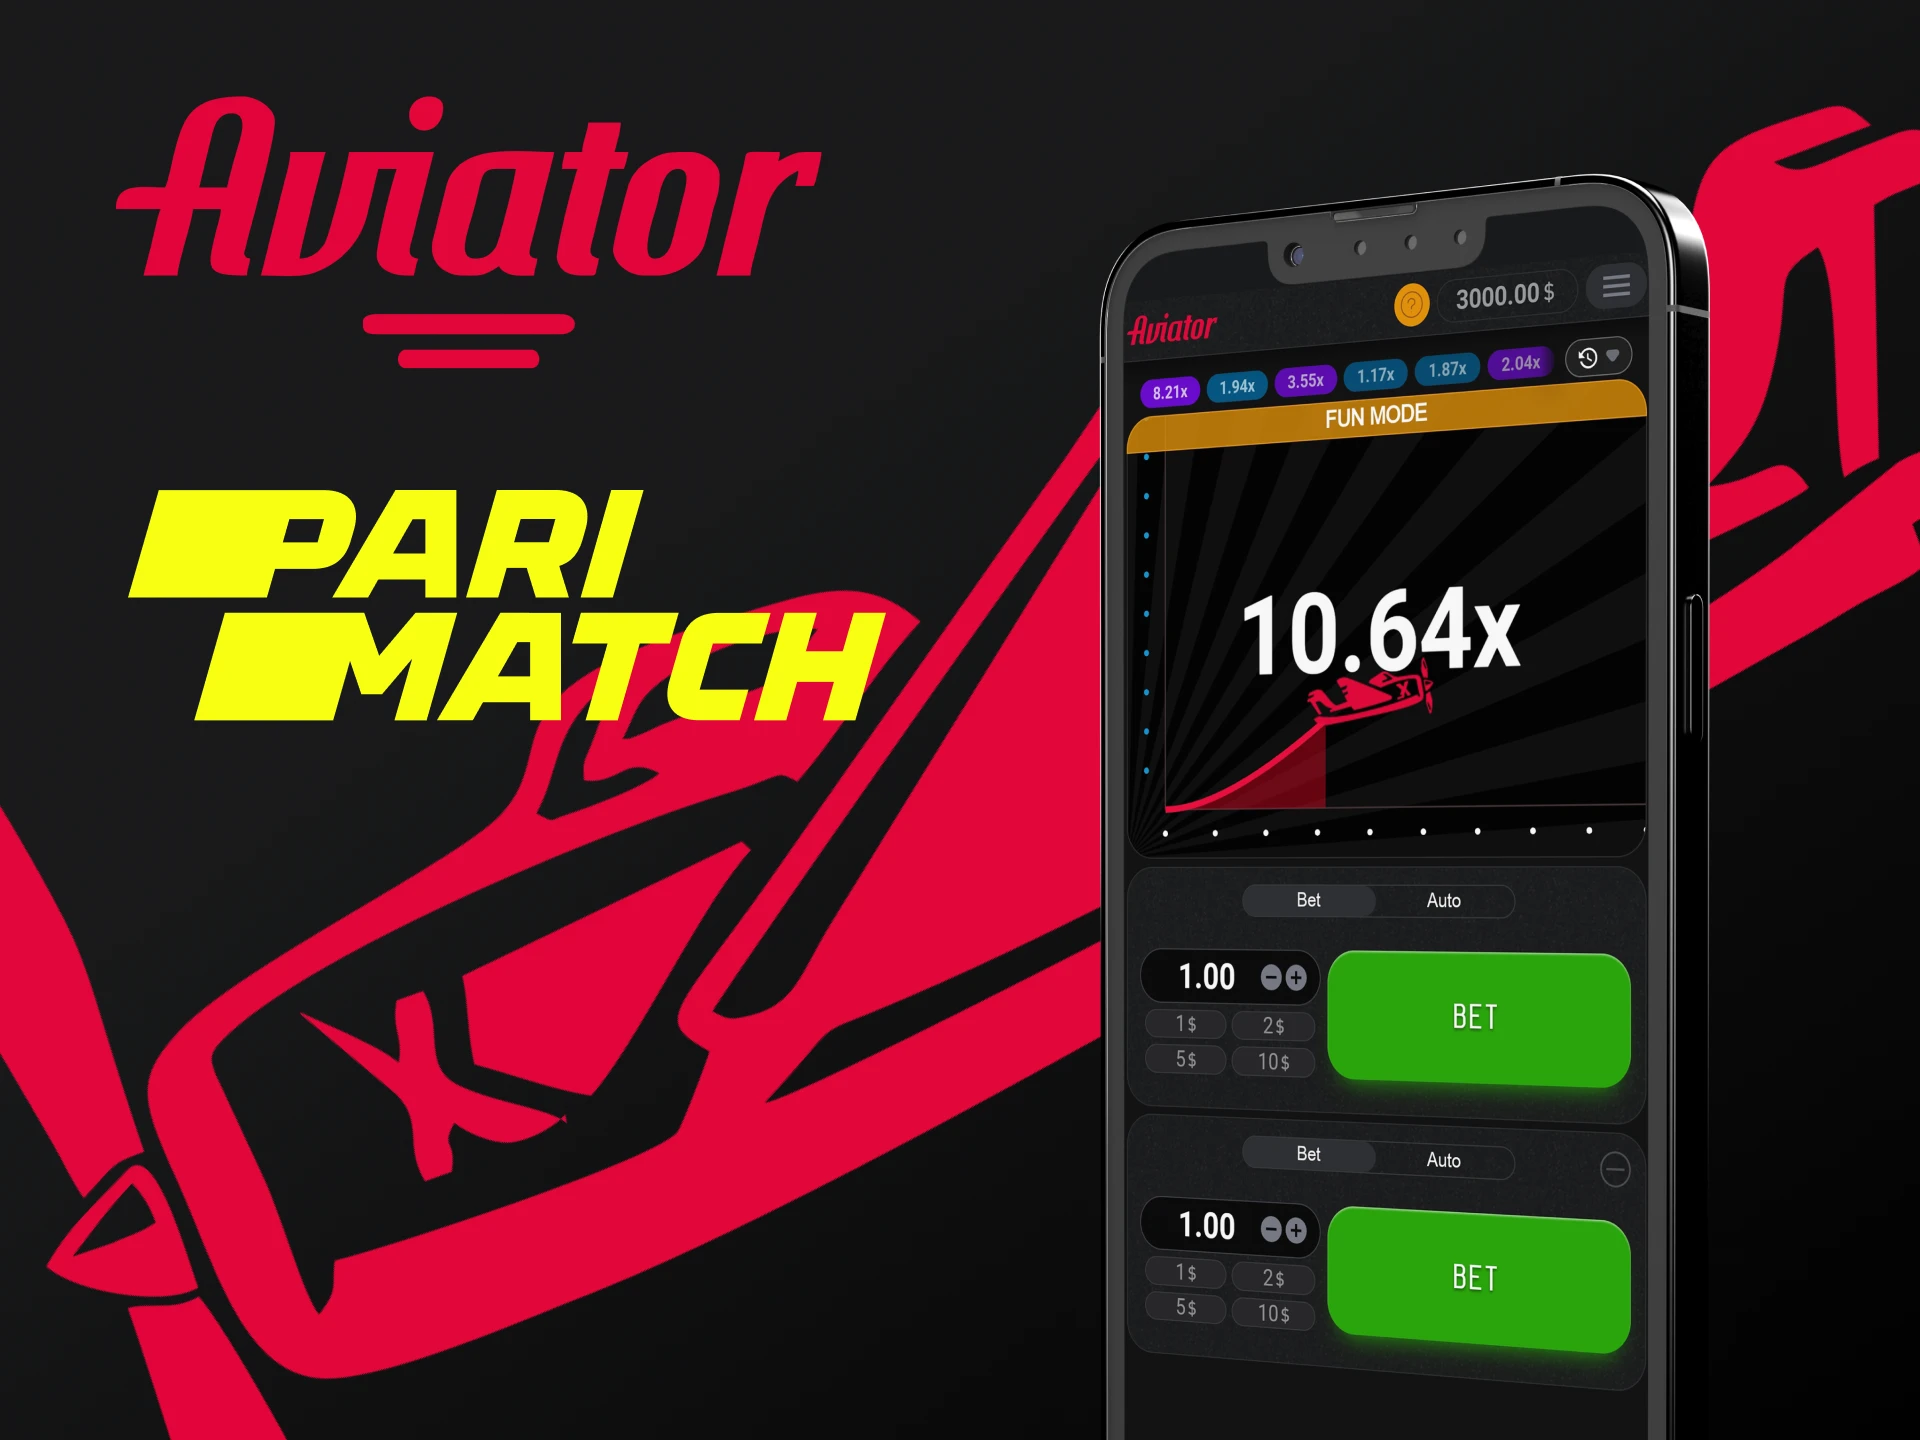 Para jogar Aviator, escolha o aplicativo Parimatch.